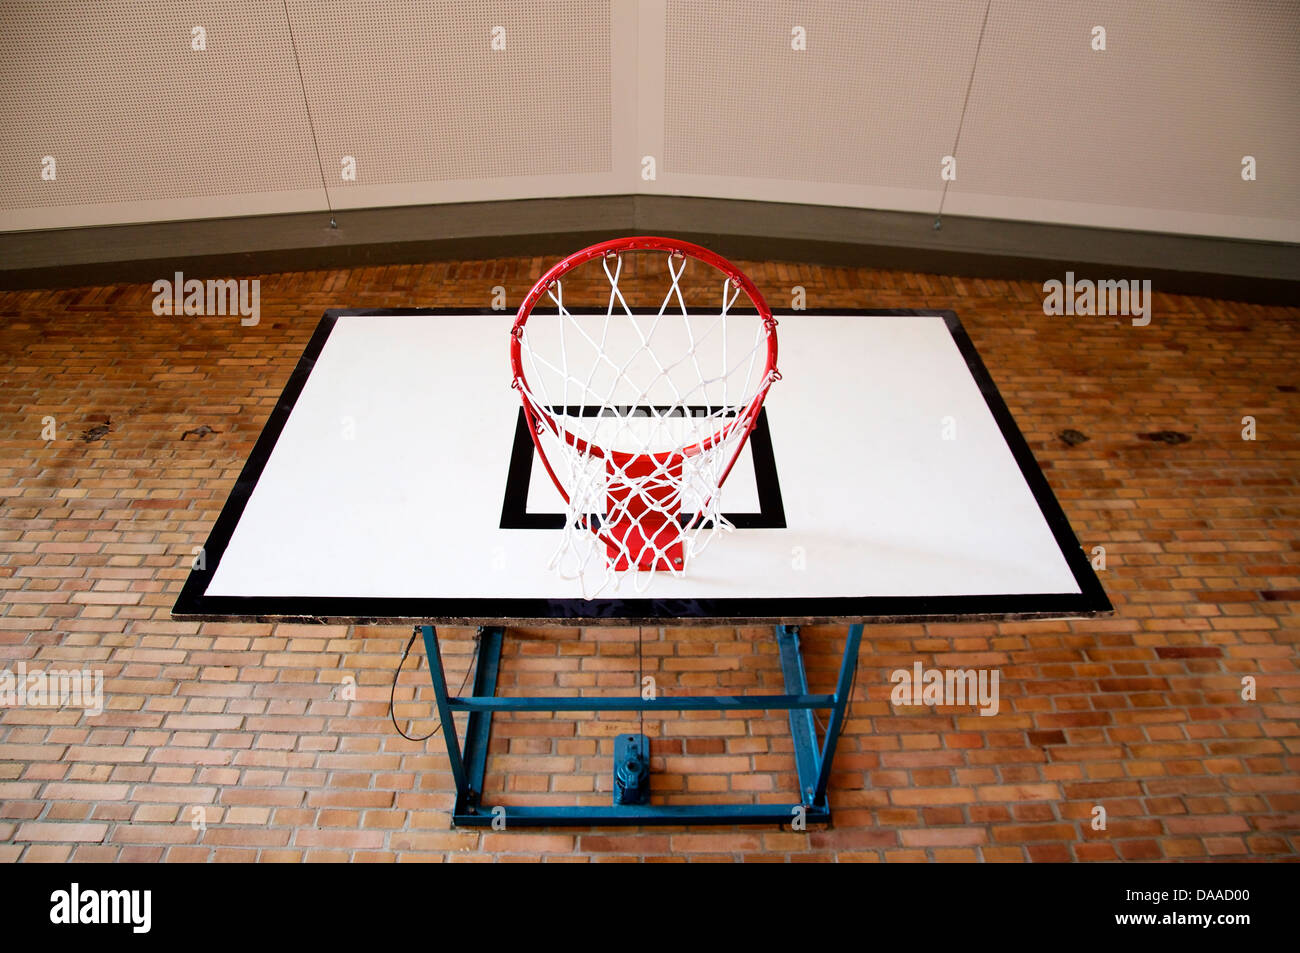 Panier de basket-ball à l'intérieur d'une salle de sport Vue de dessous  Photo Stock - Alamy